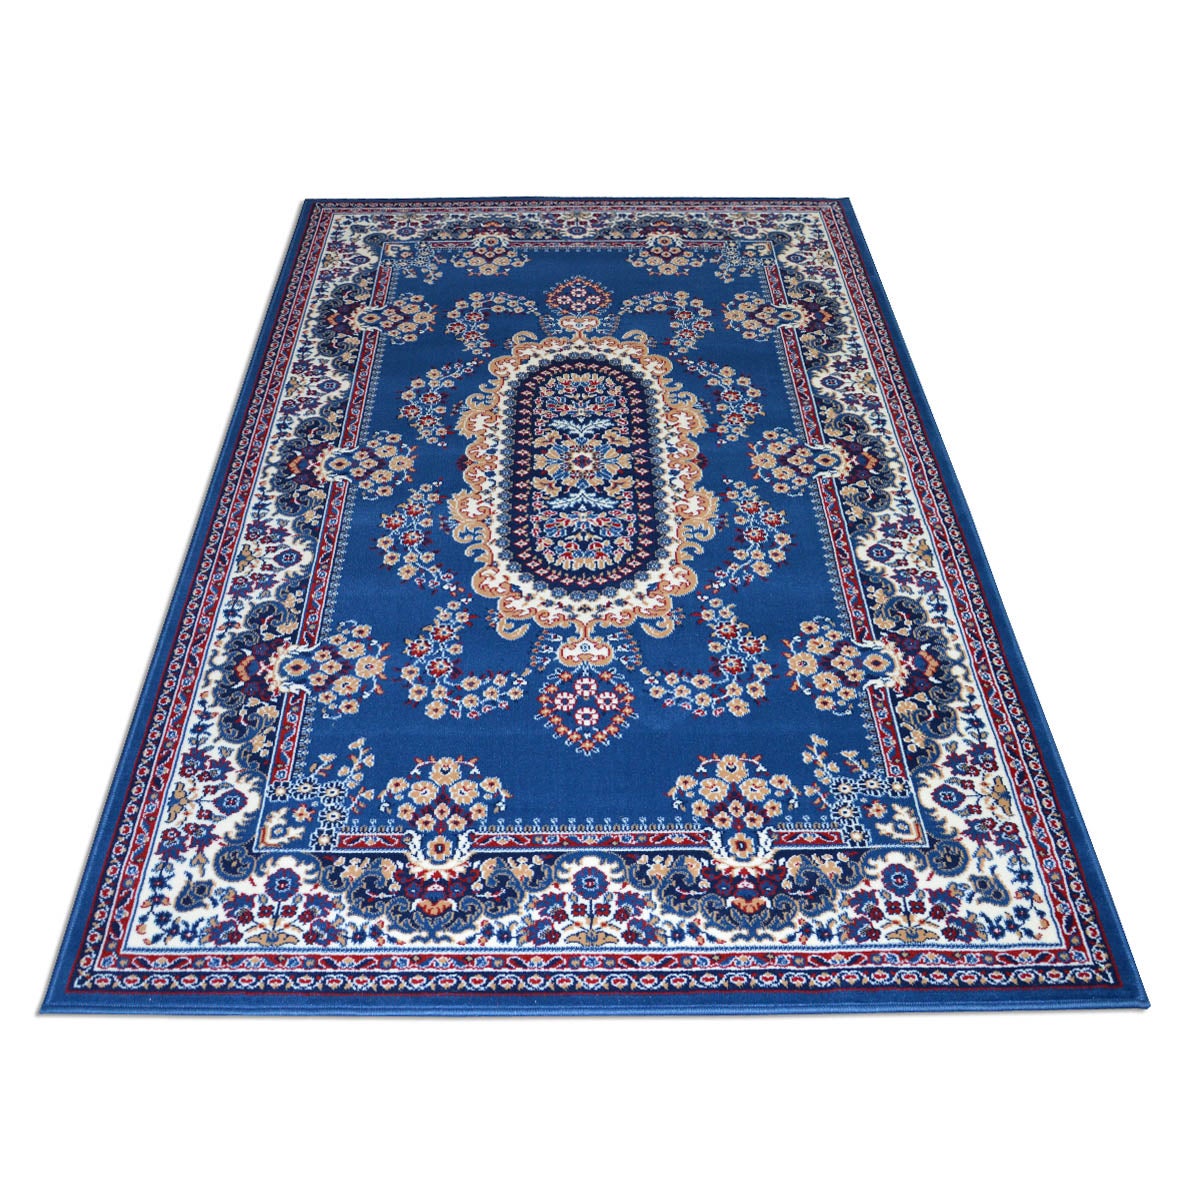 Tappeto arredo Royal Shiraz 2063-BLUE 100x150 Tappeto Soggiorno WEBTAPPETI.IT Tappeto Classico Orientale Economico 